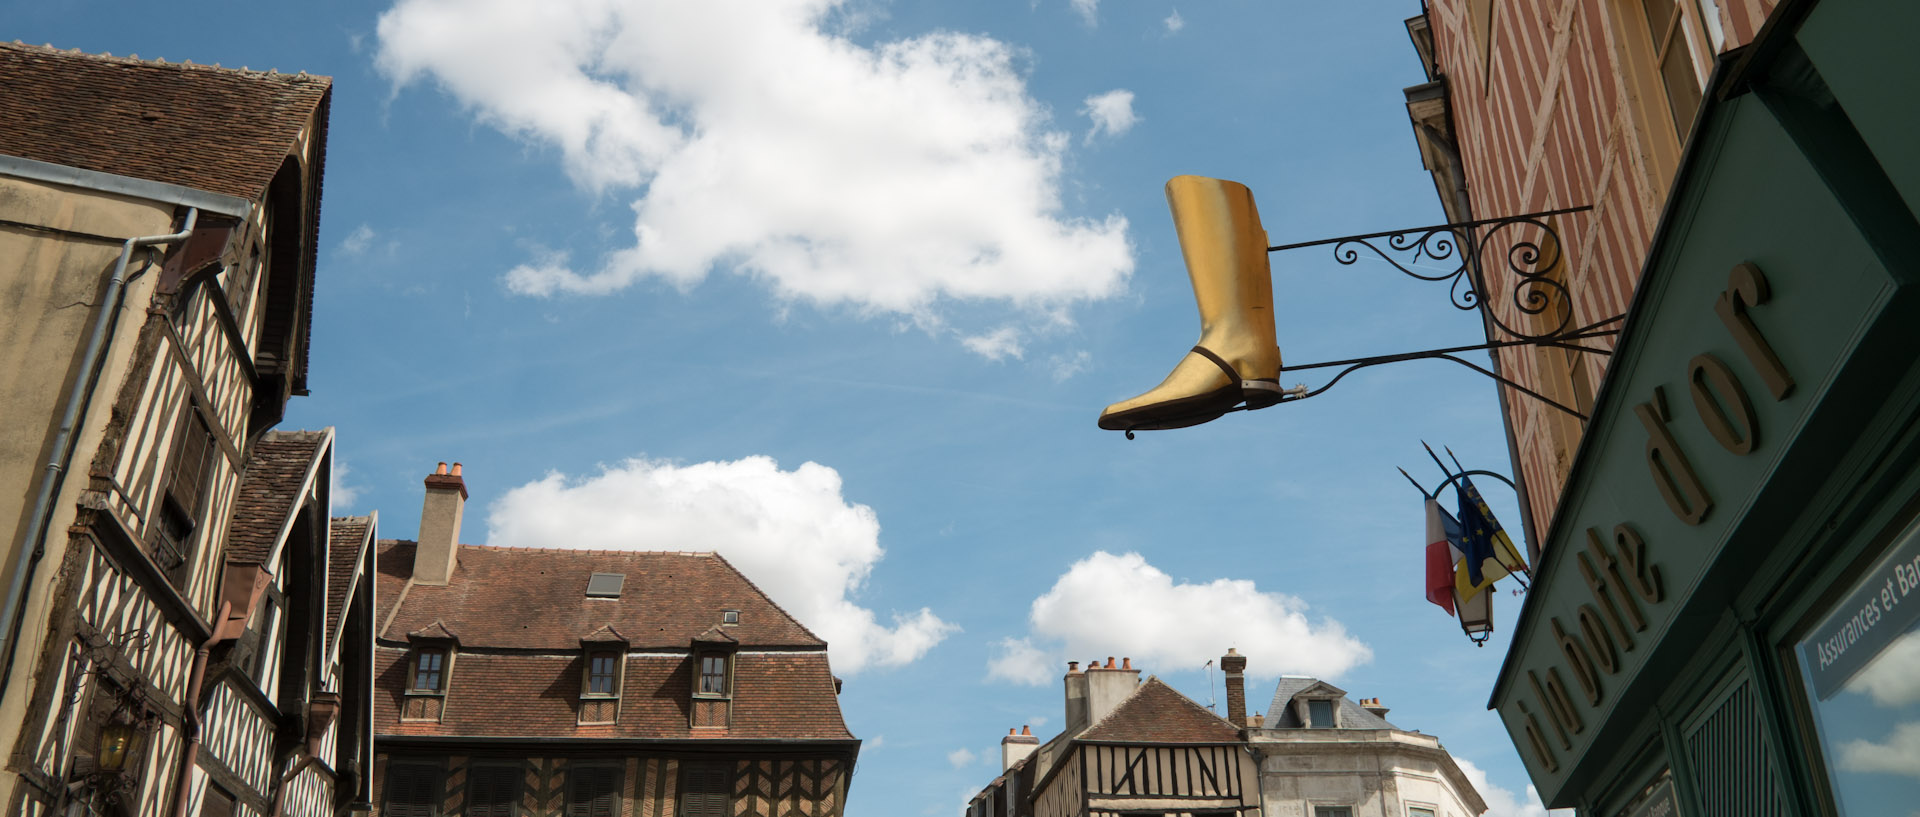 La Botte d'or, place de l'Hôtel de ville, Auxerre.